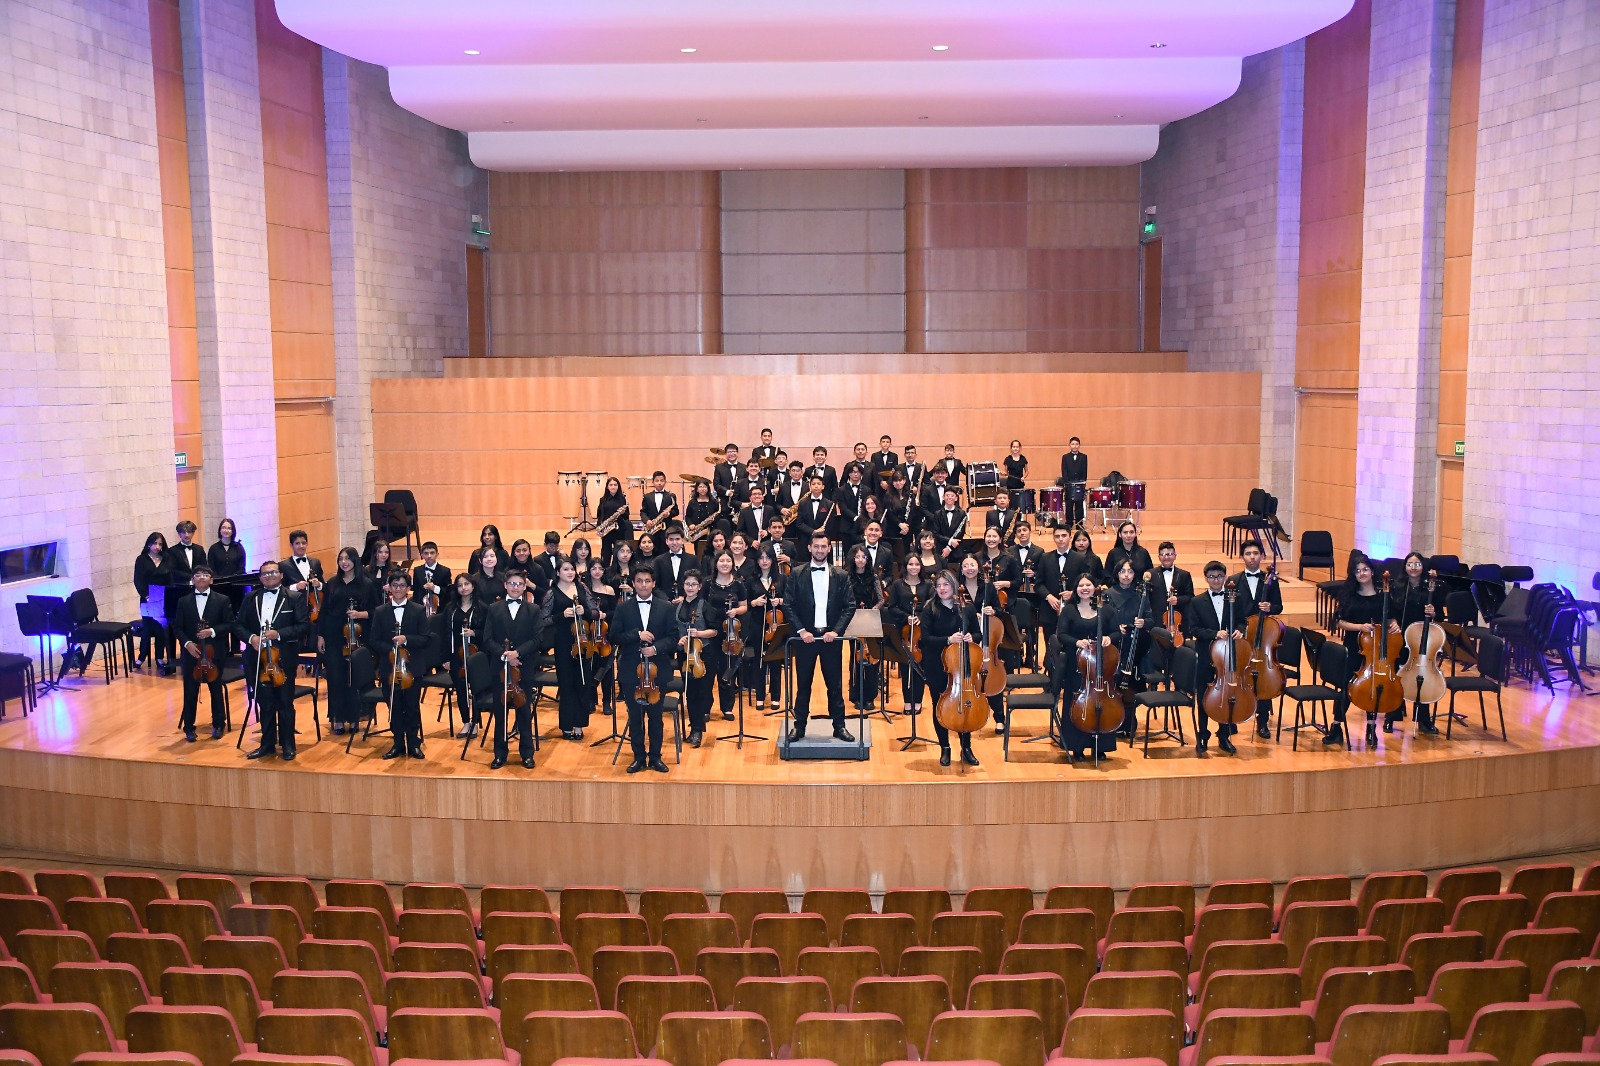 60 artistas ambateños estarán presentes en este concierto de música clásica.